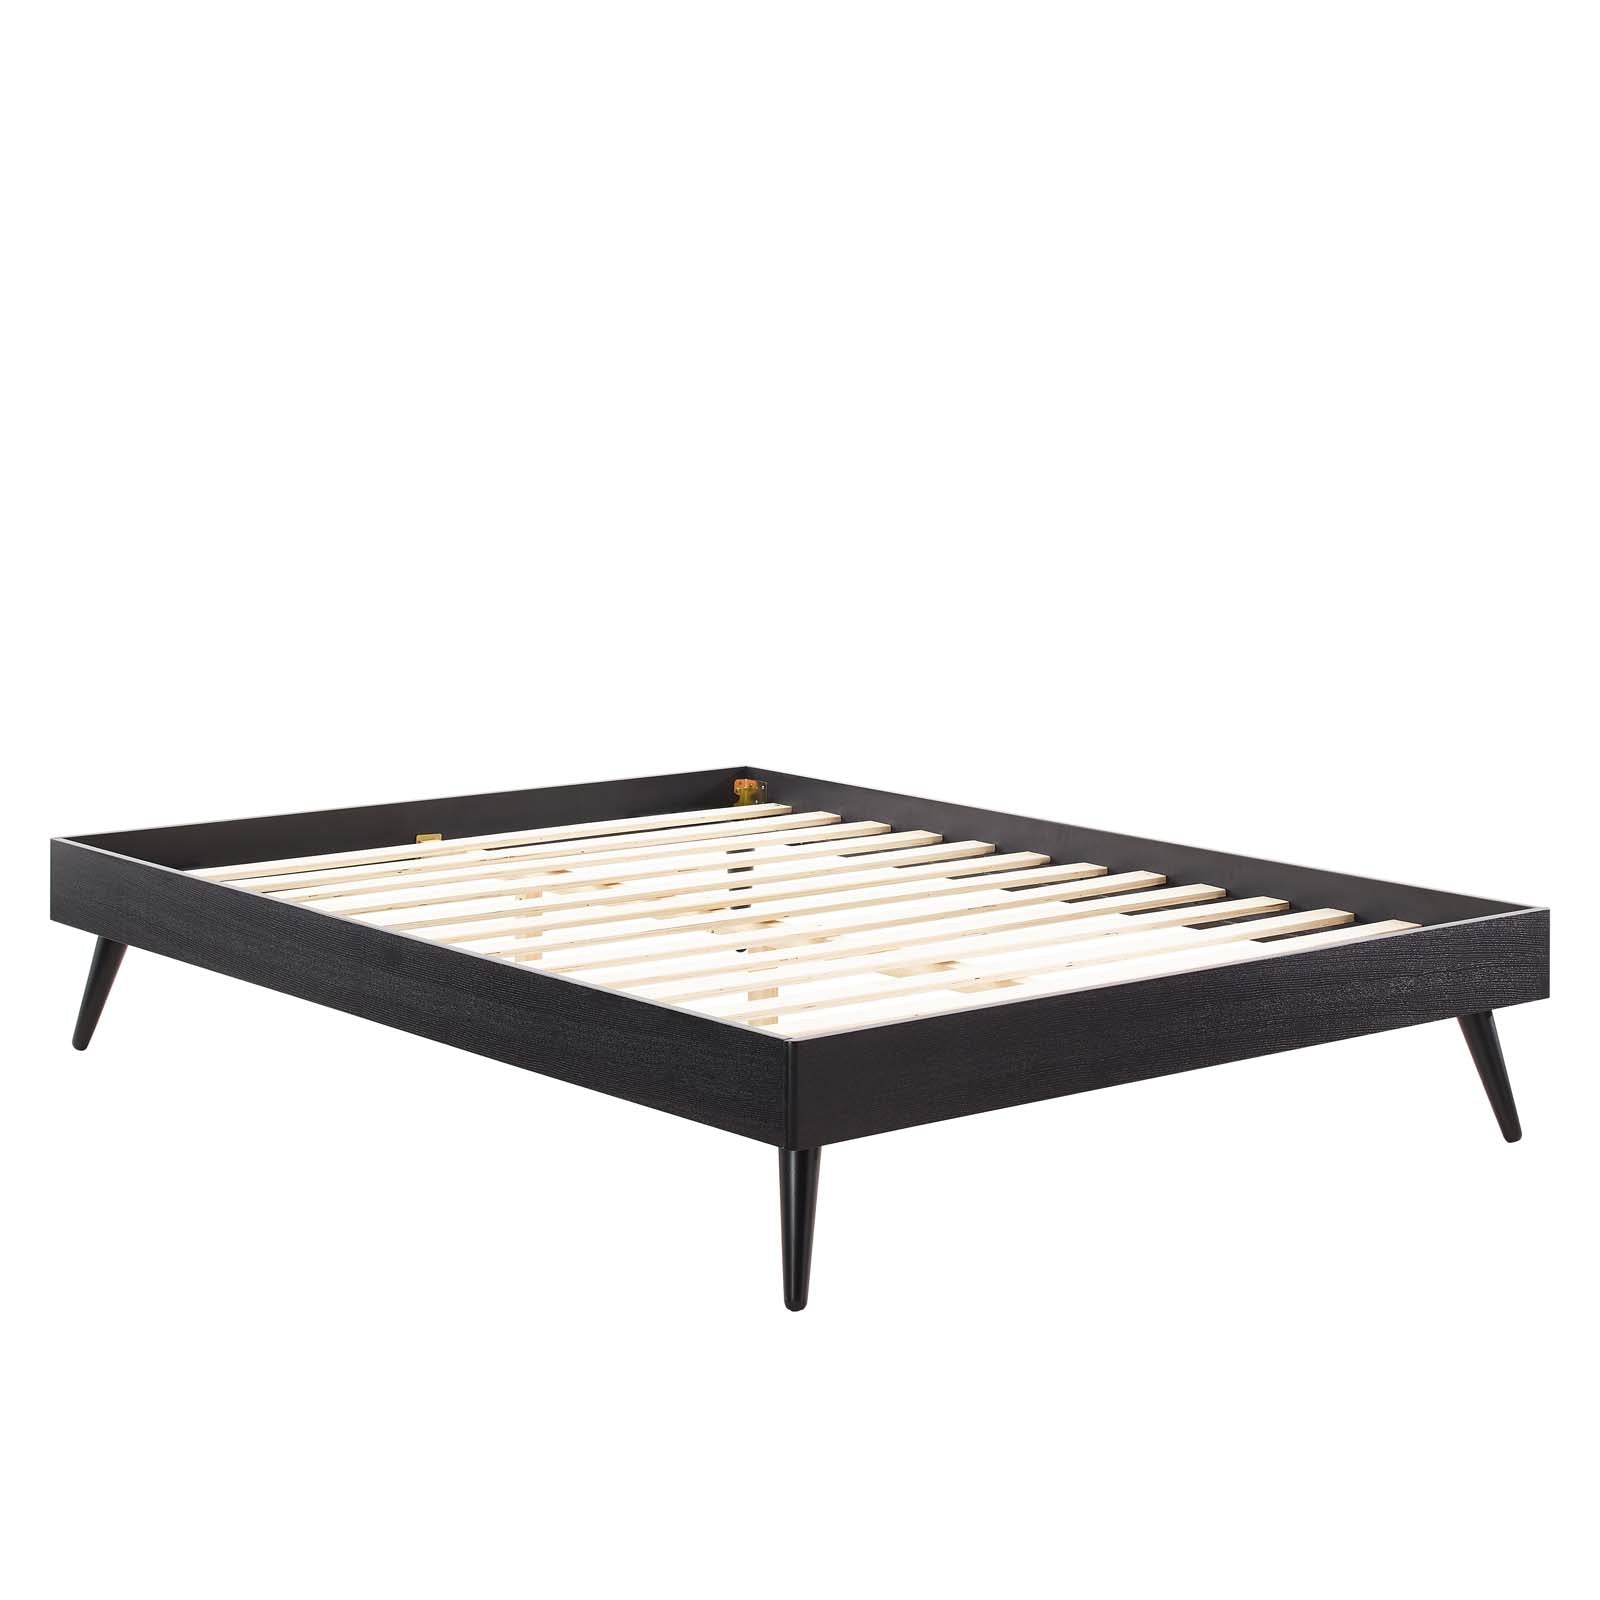 Modway Beds - Margo King Wood Platform Bed Frame Black